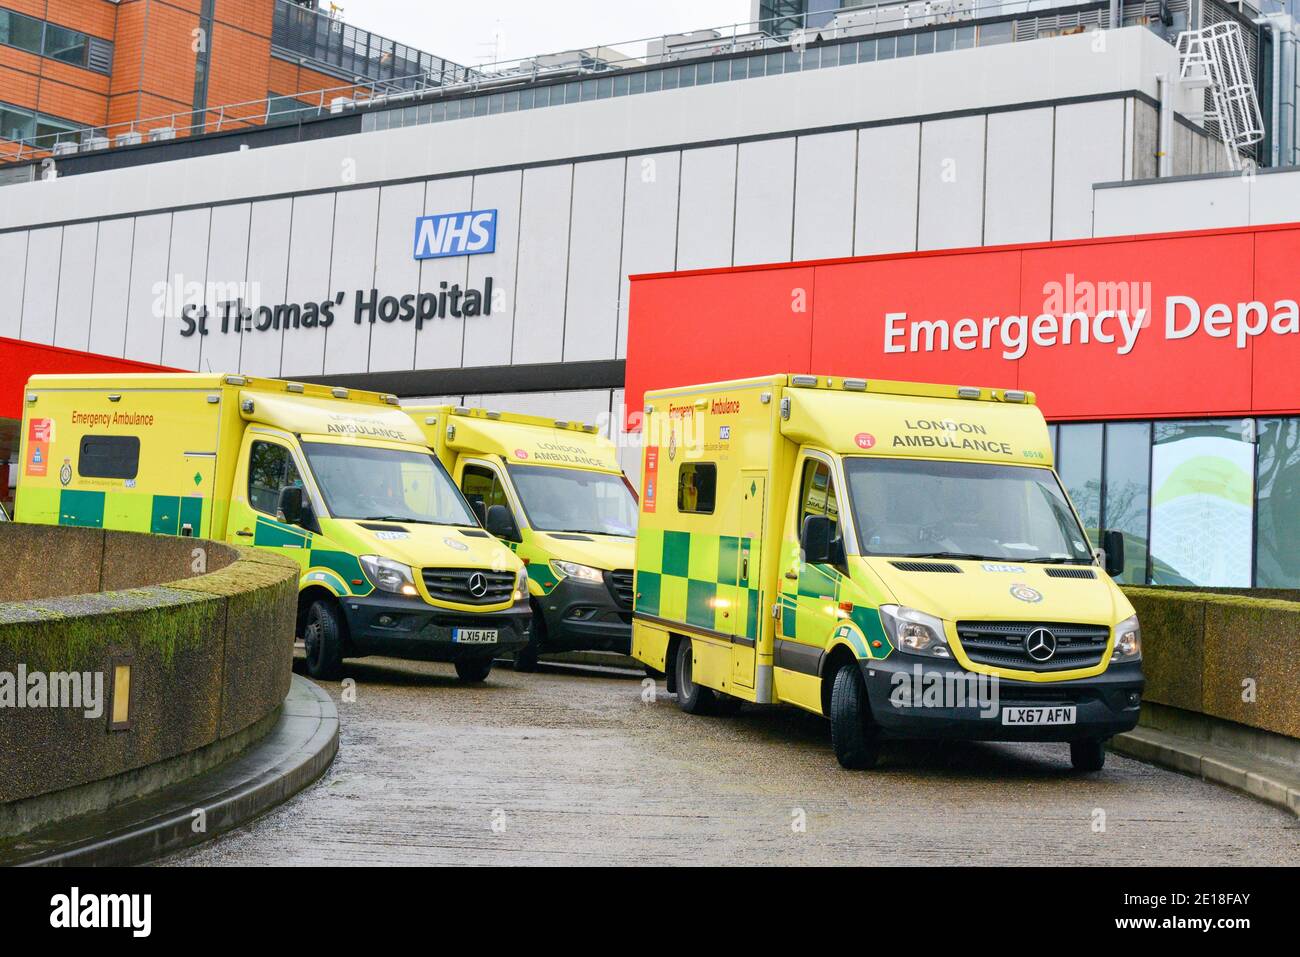 Ambulances park outside St Thomas Hospital in London. Stock Photo